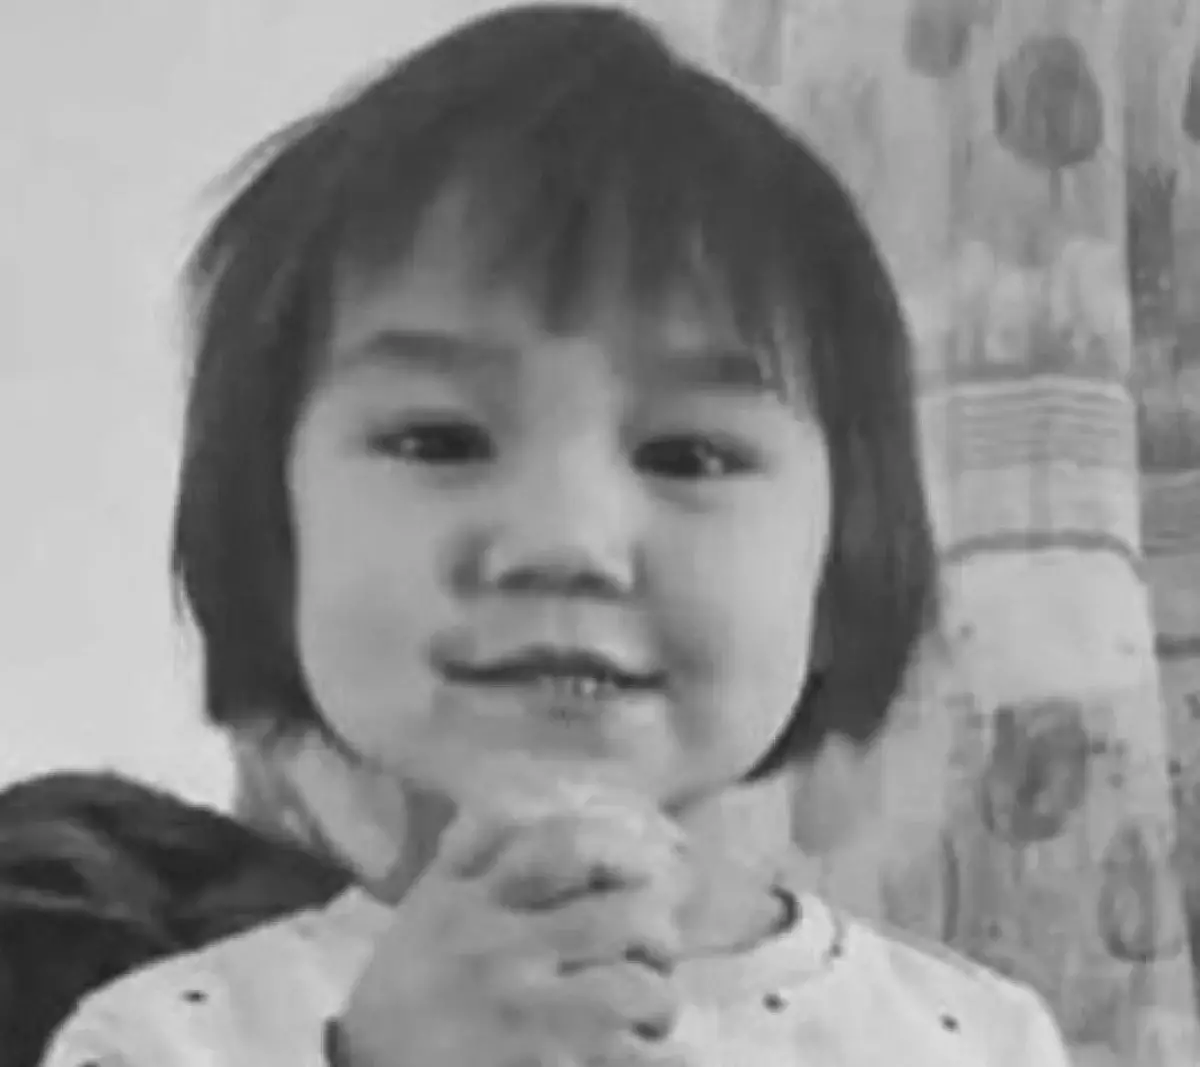 Тело пропавшей трехлетней девочки из Туркестанской области нашли в туалете